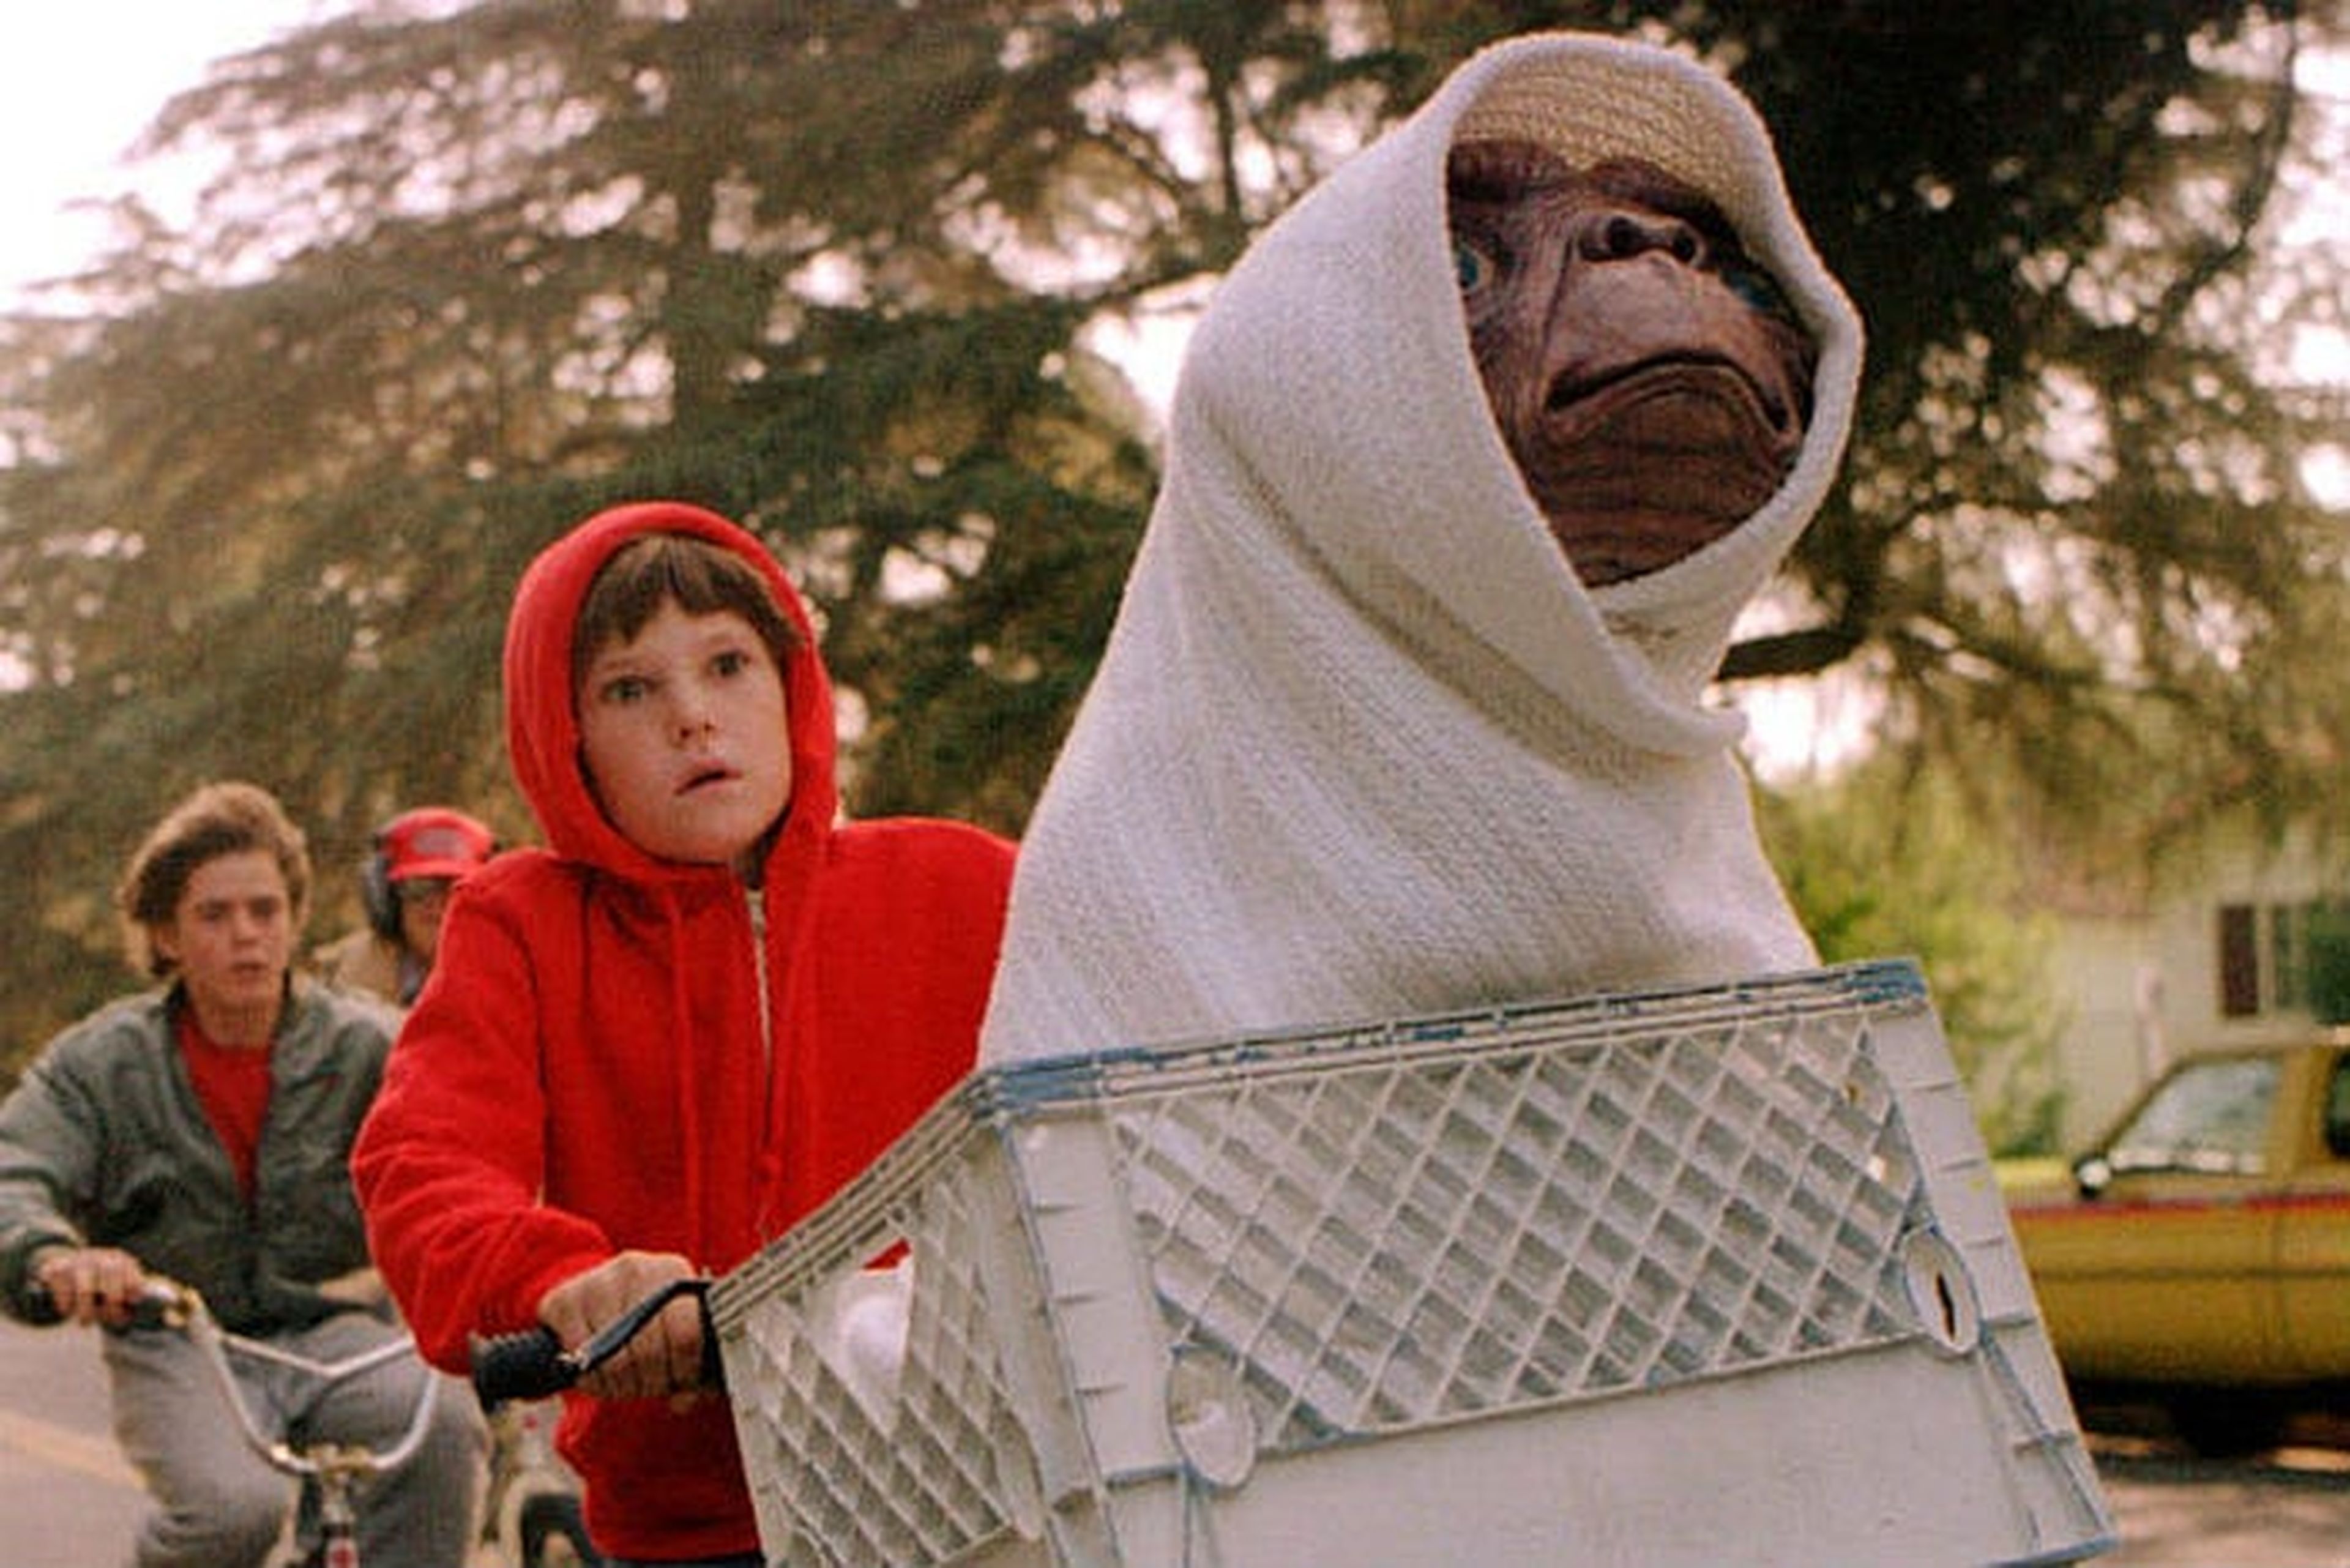 E.T.